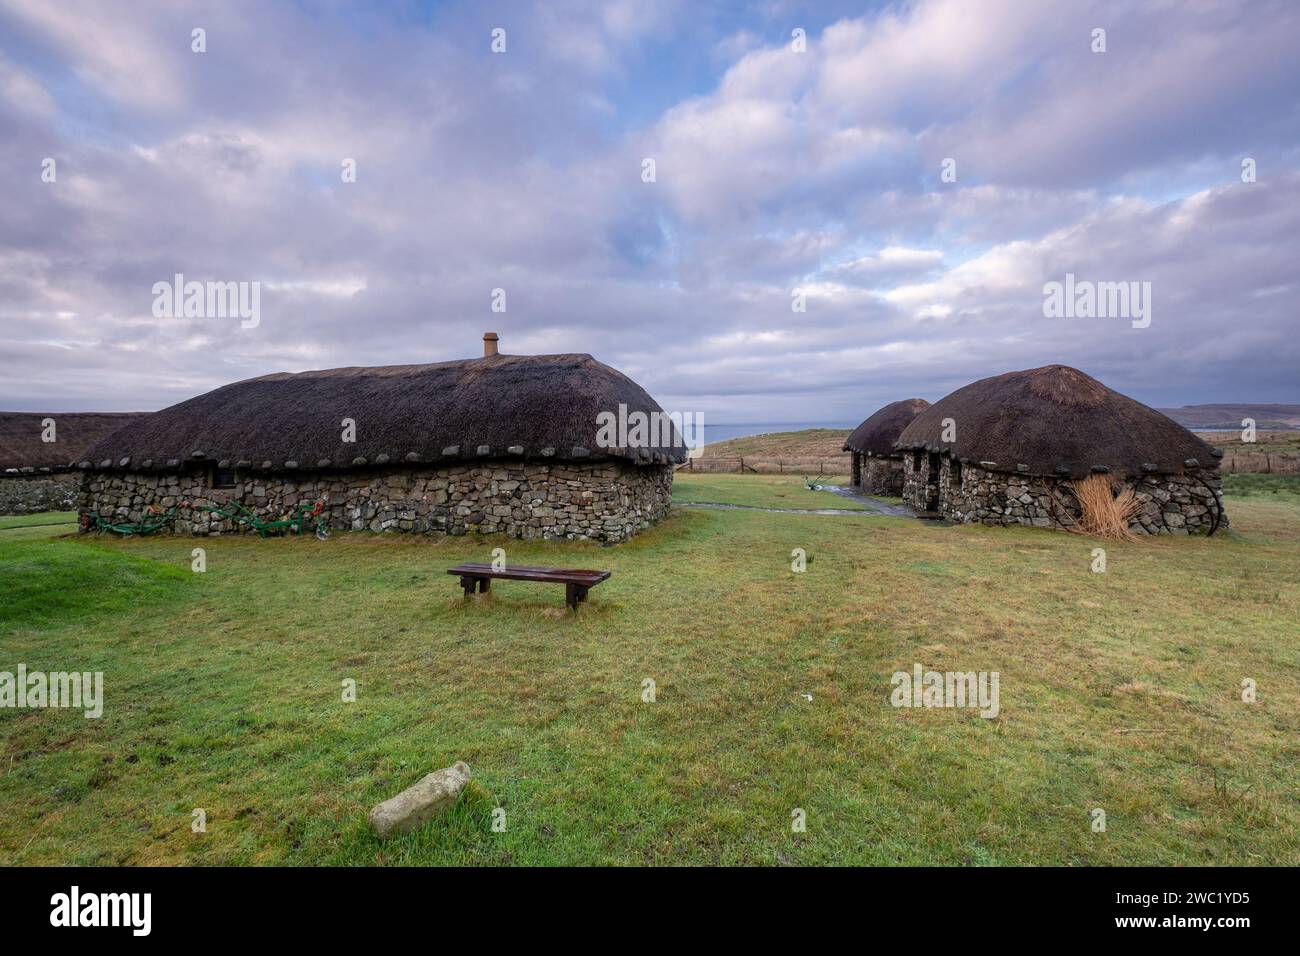 poblado tipico celta,museo de la vida insular, Kilmuir,  ( Cille Mhoire ),costa oeste de la península de Trotternish,  isla de Skye, Highlands, Escoci Stock Photo